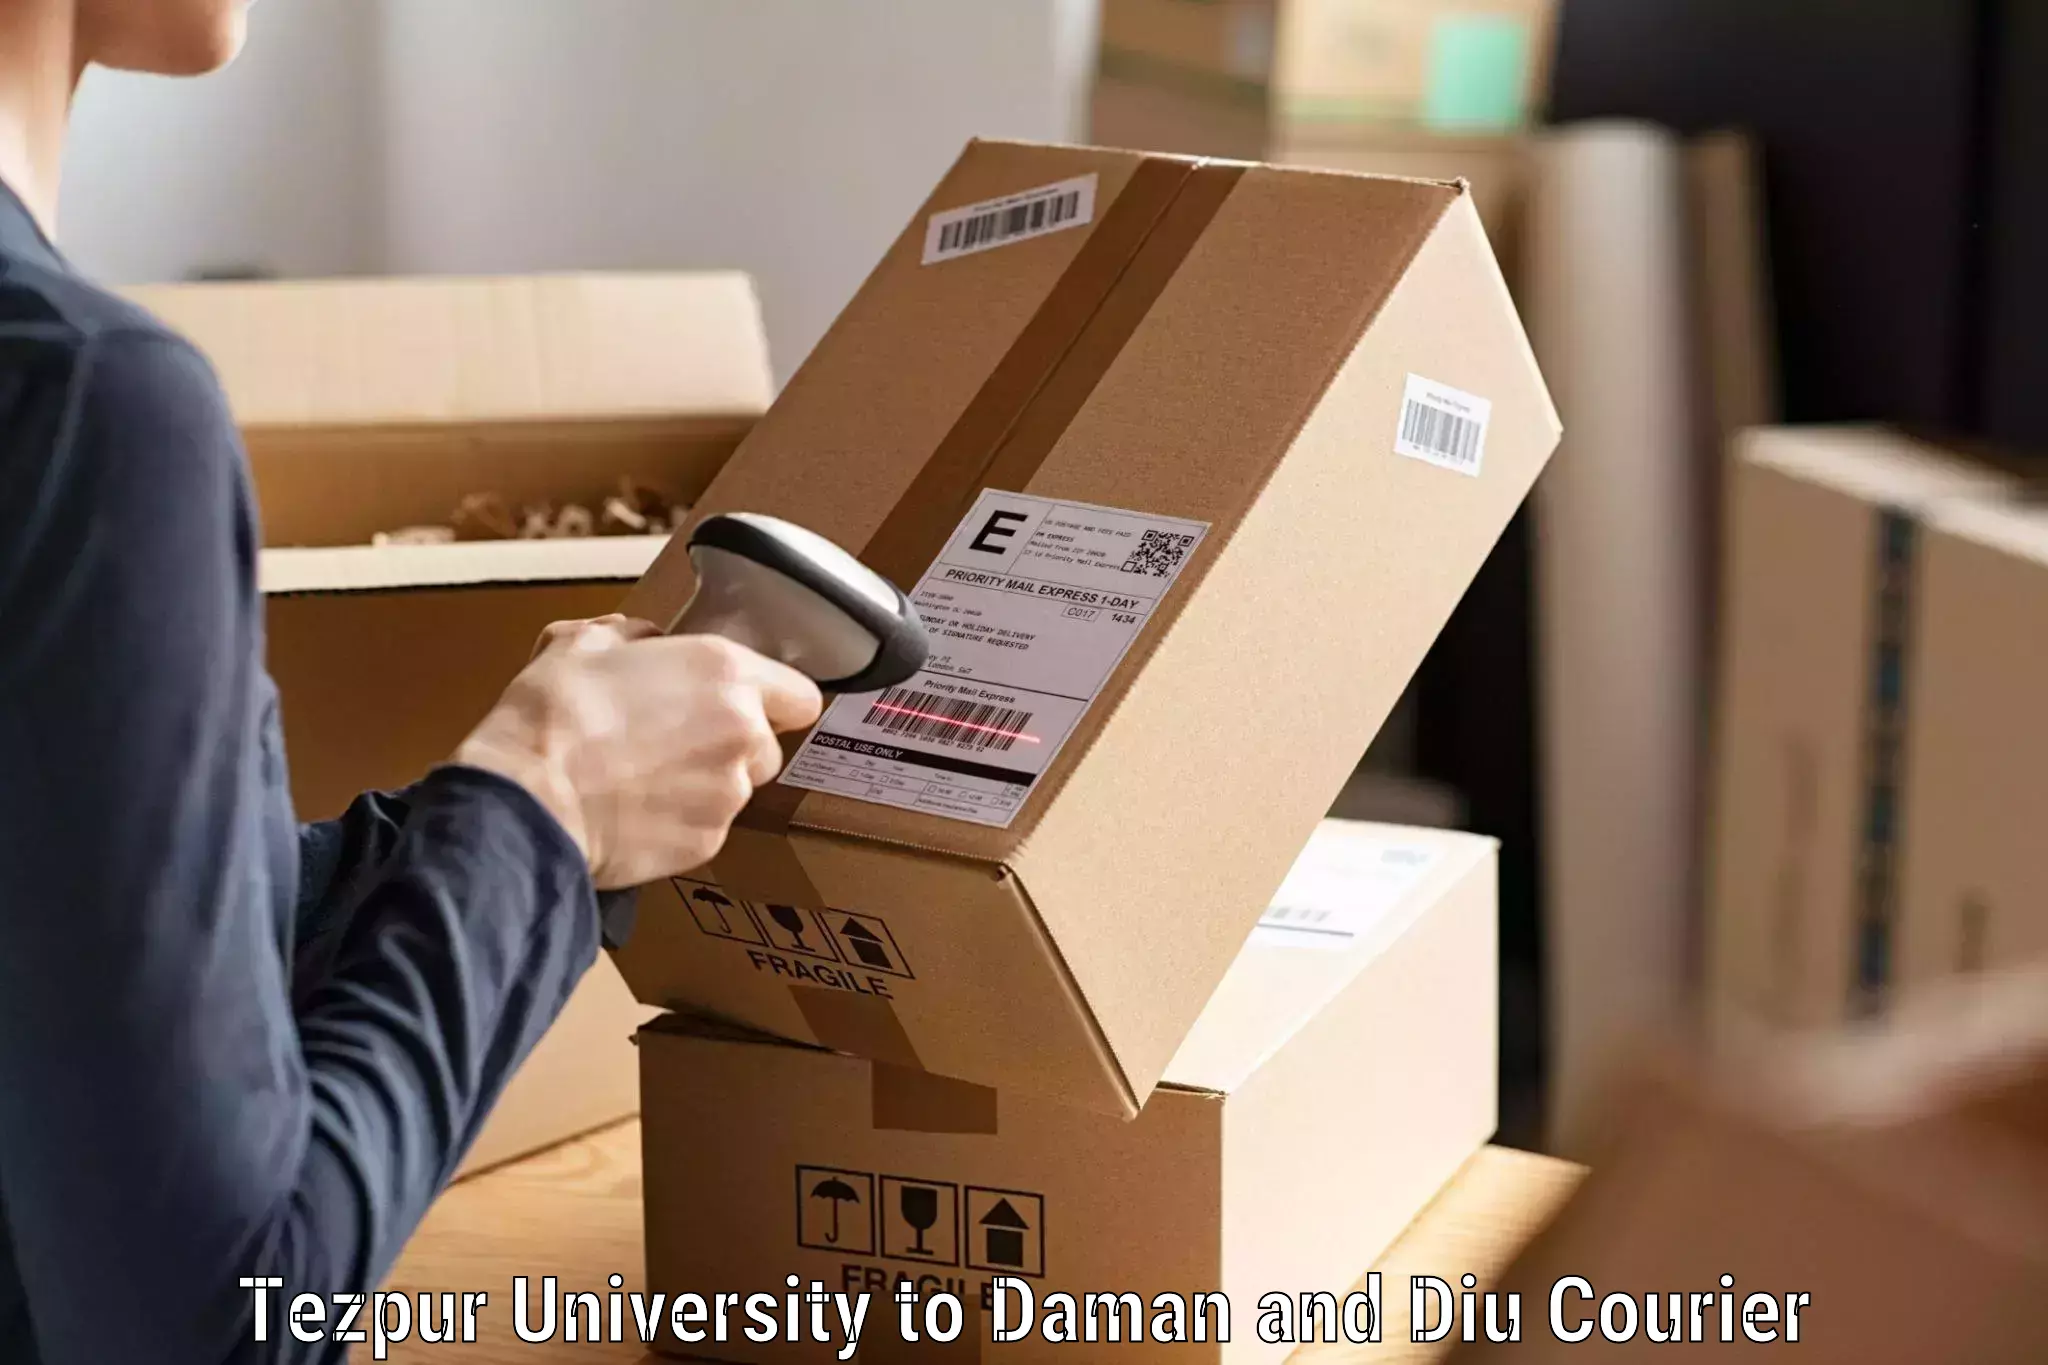 Bulk courier orders Tezpur University to Daman and Diu